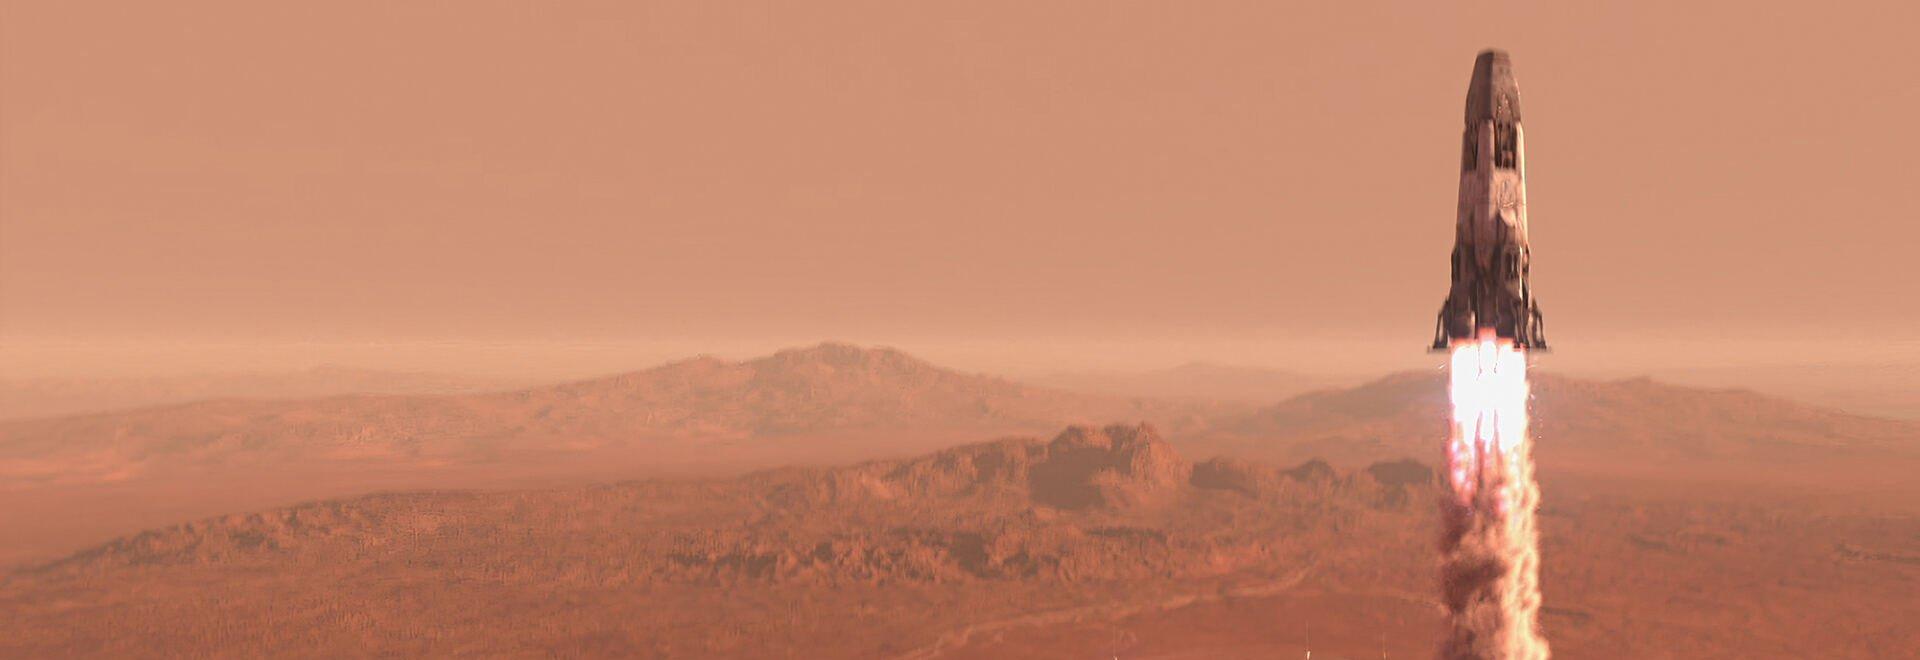 Ep. 1 - Missione su Marte